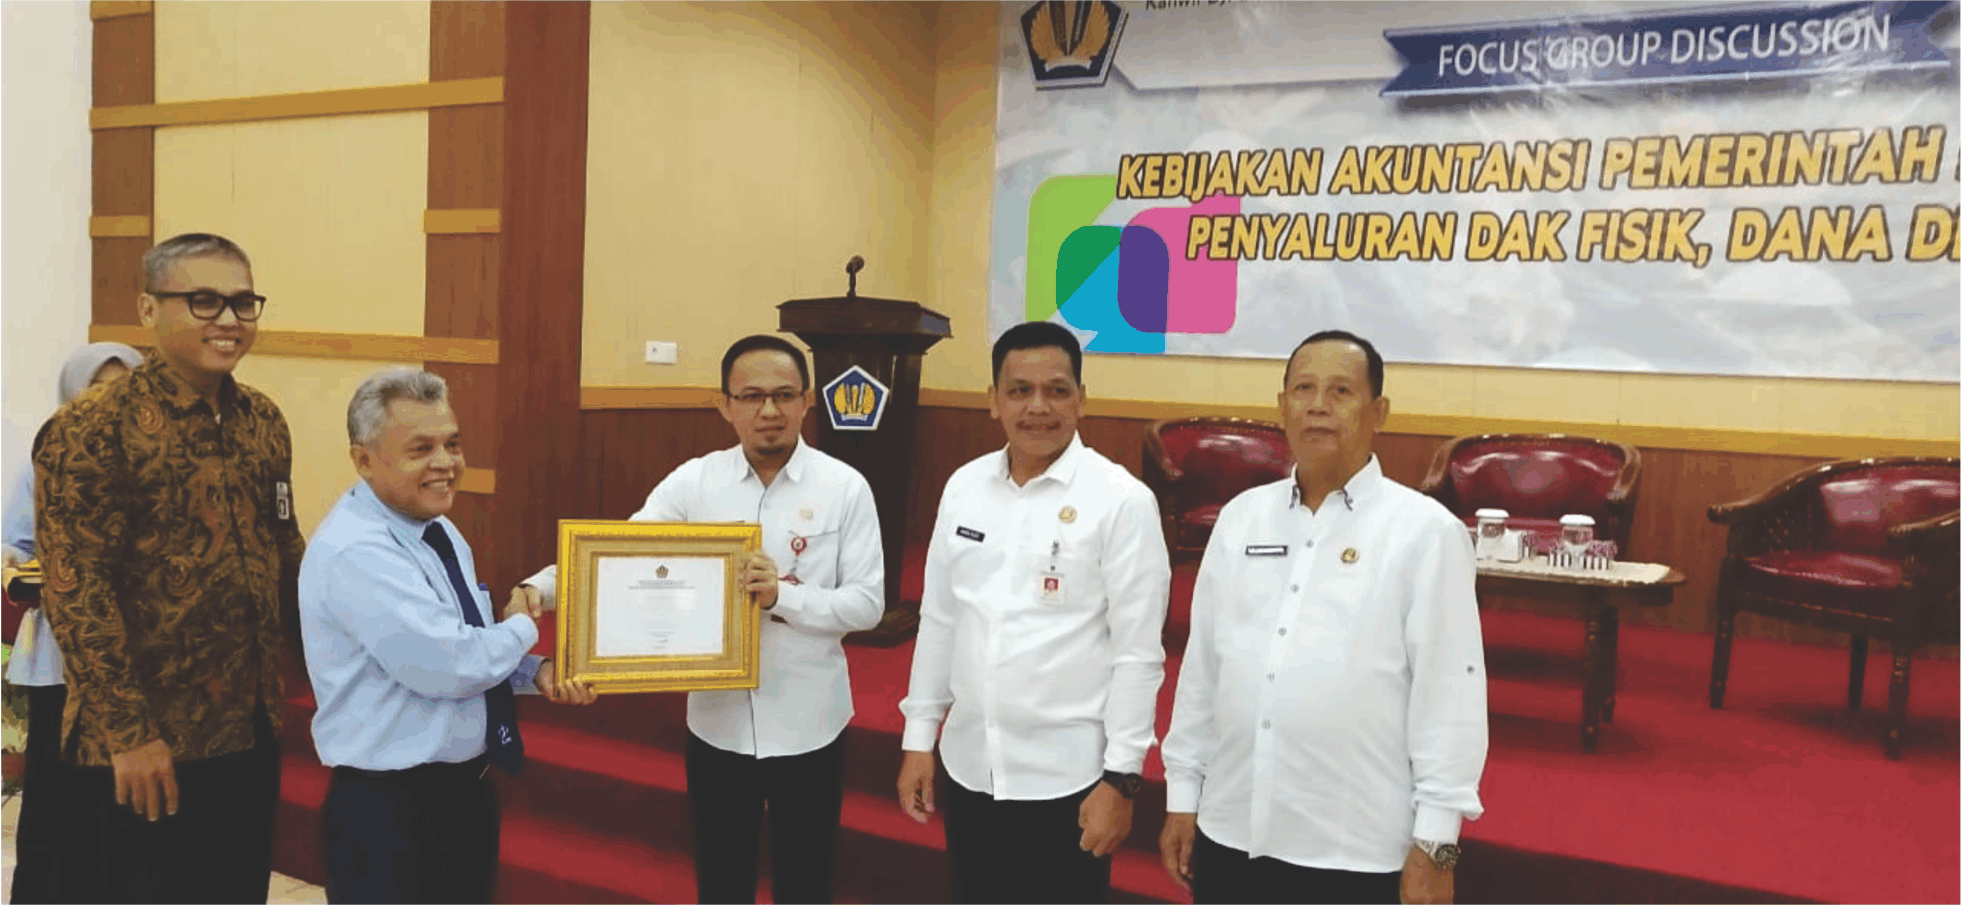 Kepala DPMD Kabupaten Balangan, Urai Nur Iskandar, menerima piagam penghargaan dari Kepala Kanwil Ditjen Perbendaharaan Kementerian Keuangan Provinsi Kalimantan Selatan, Usdek Rahyono.